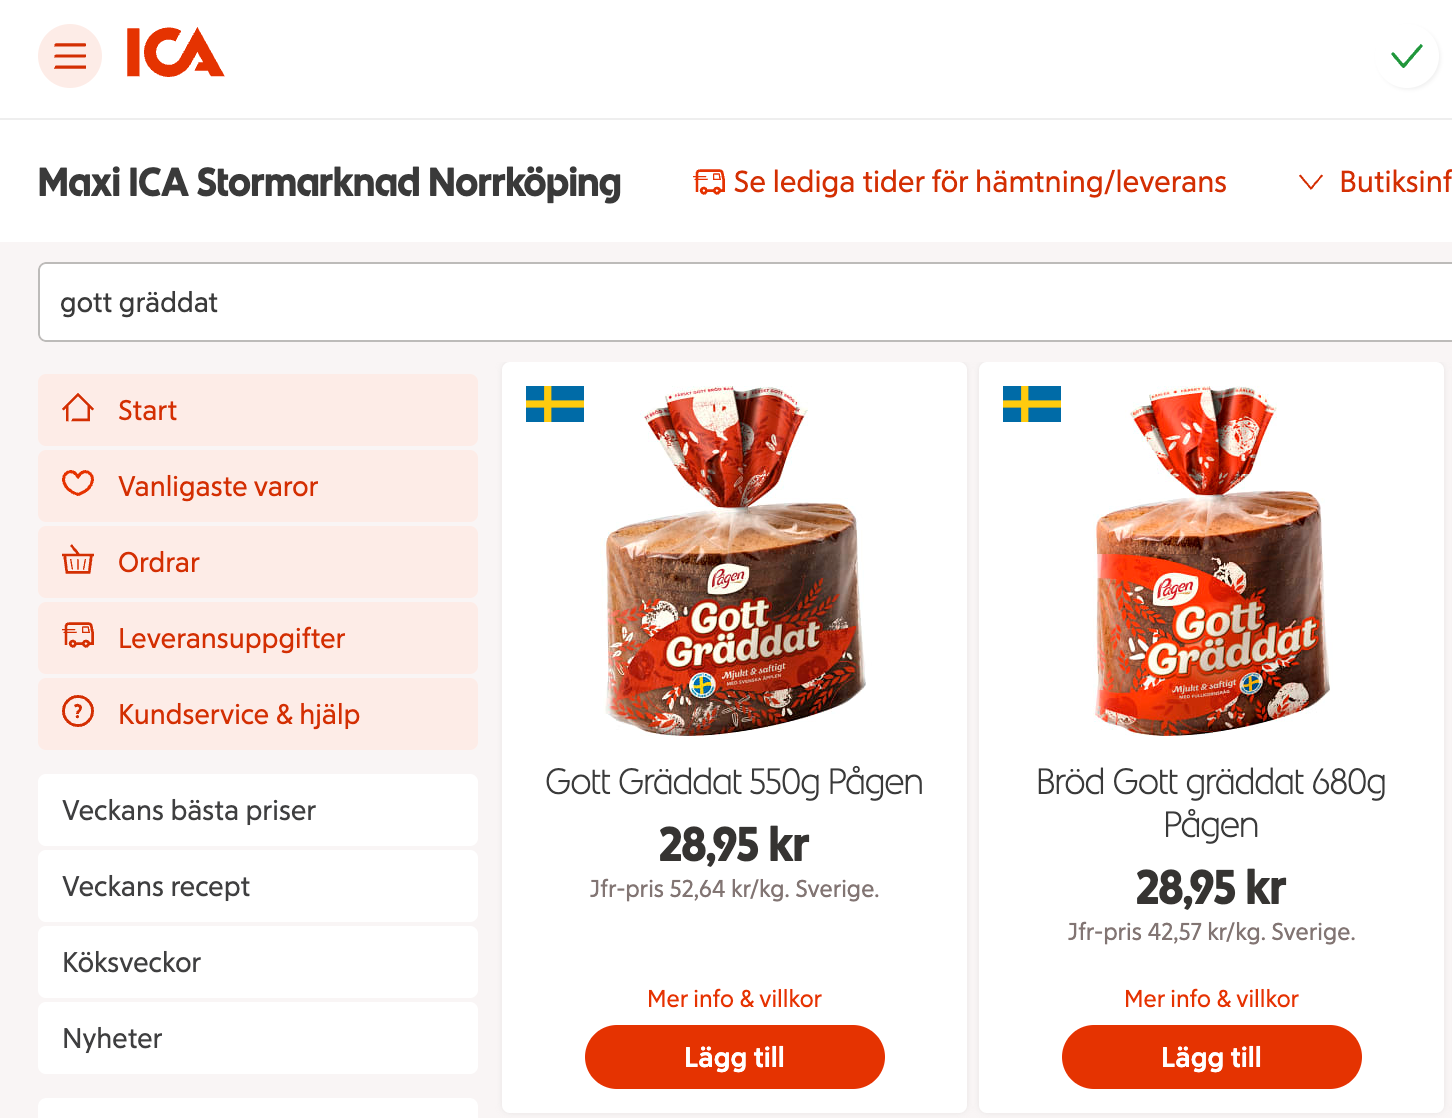 På torsdagen den 29 september sålde Maxi Ica Stormarknad i Norrköping båda förpackningarna – till samma pris. 